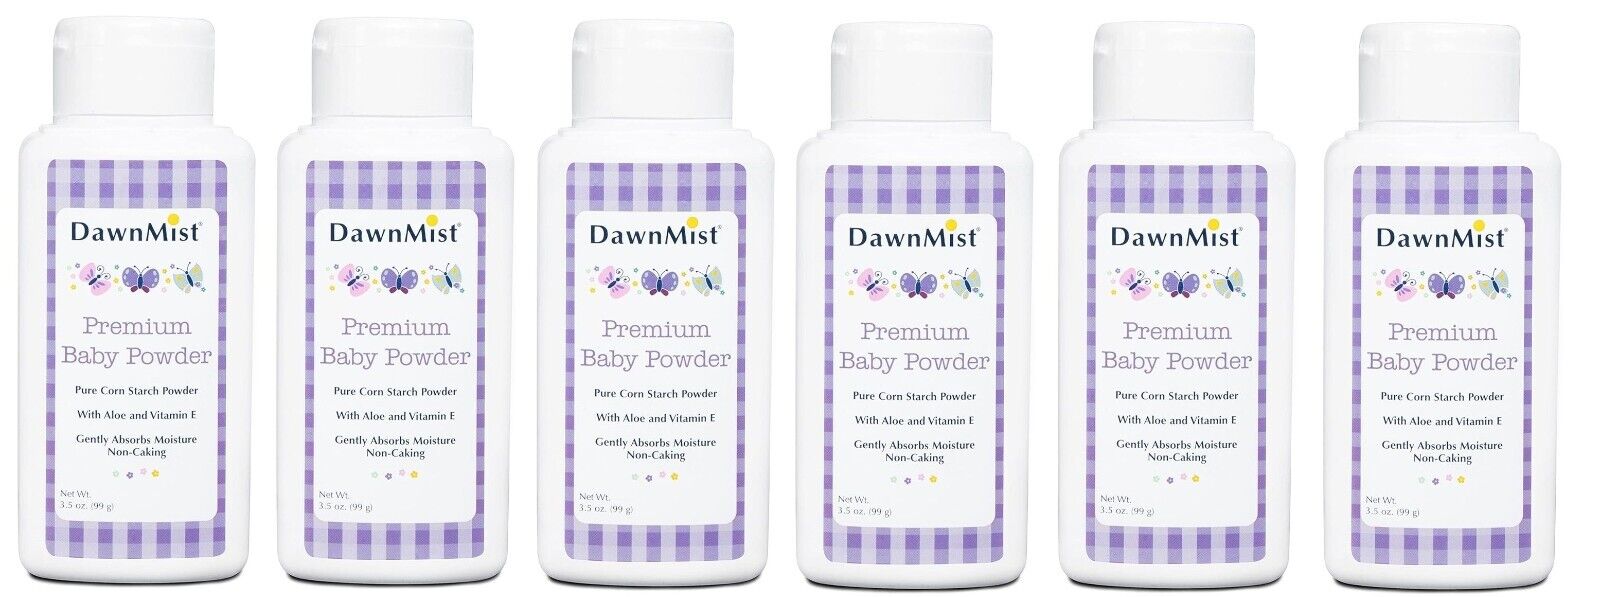 Premium Baby Powder Pure Corn Starch w/Aloe and Vitamin E, Dukal Dawn Mist Lot